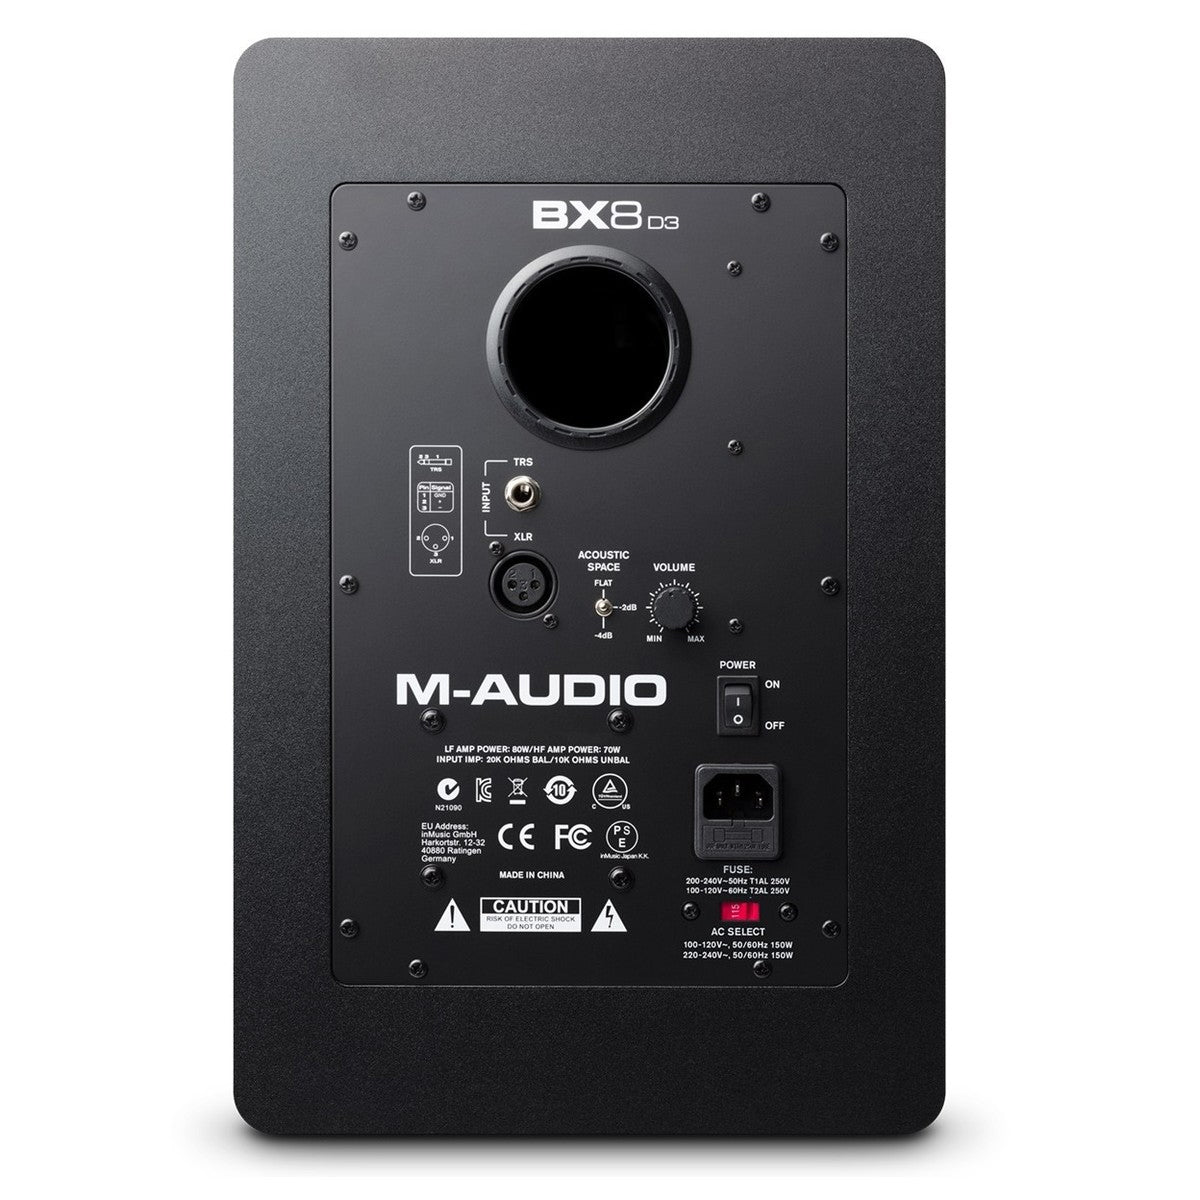 M-Audio BX8 D3 Monitor Each